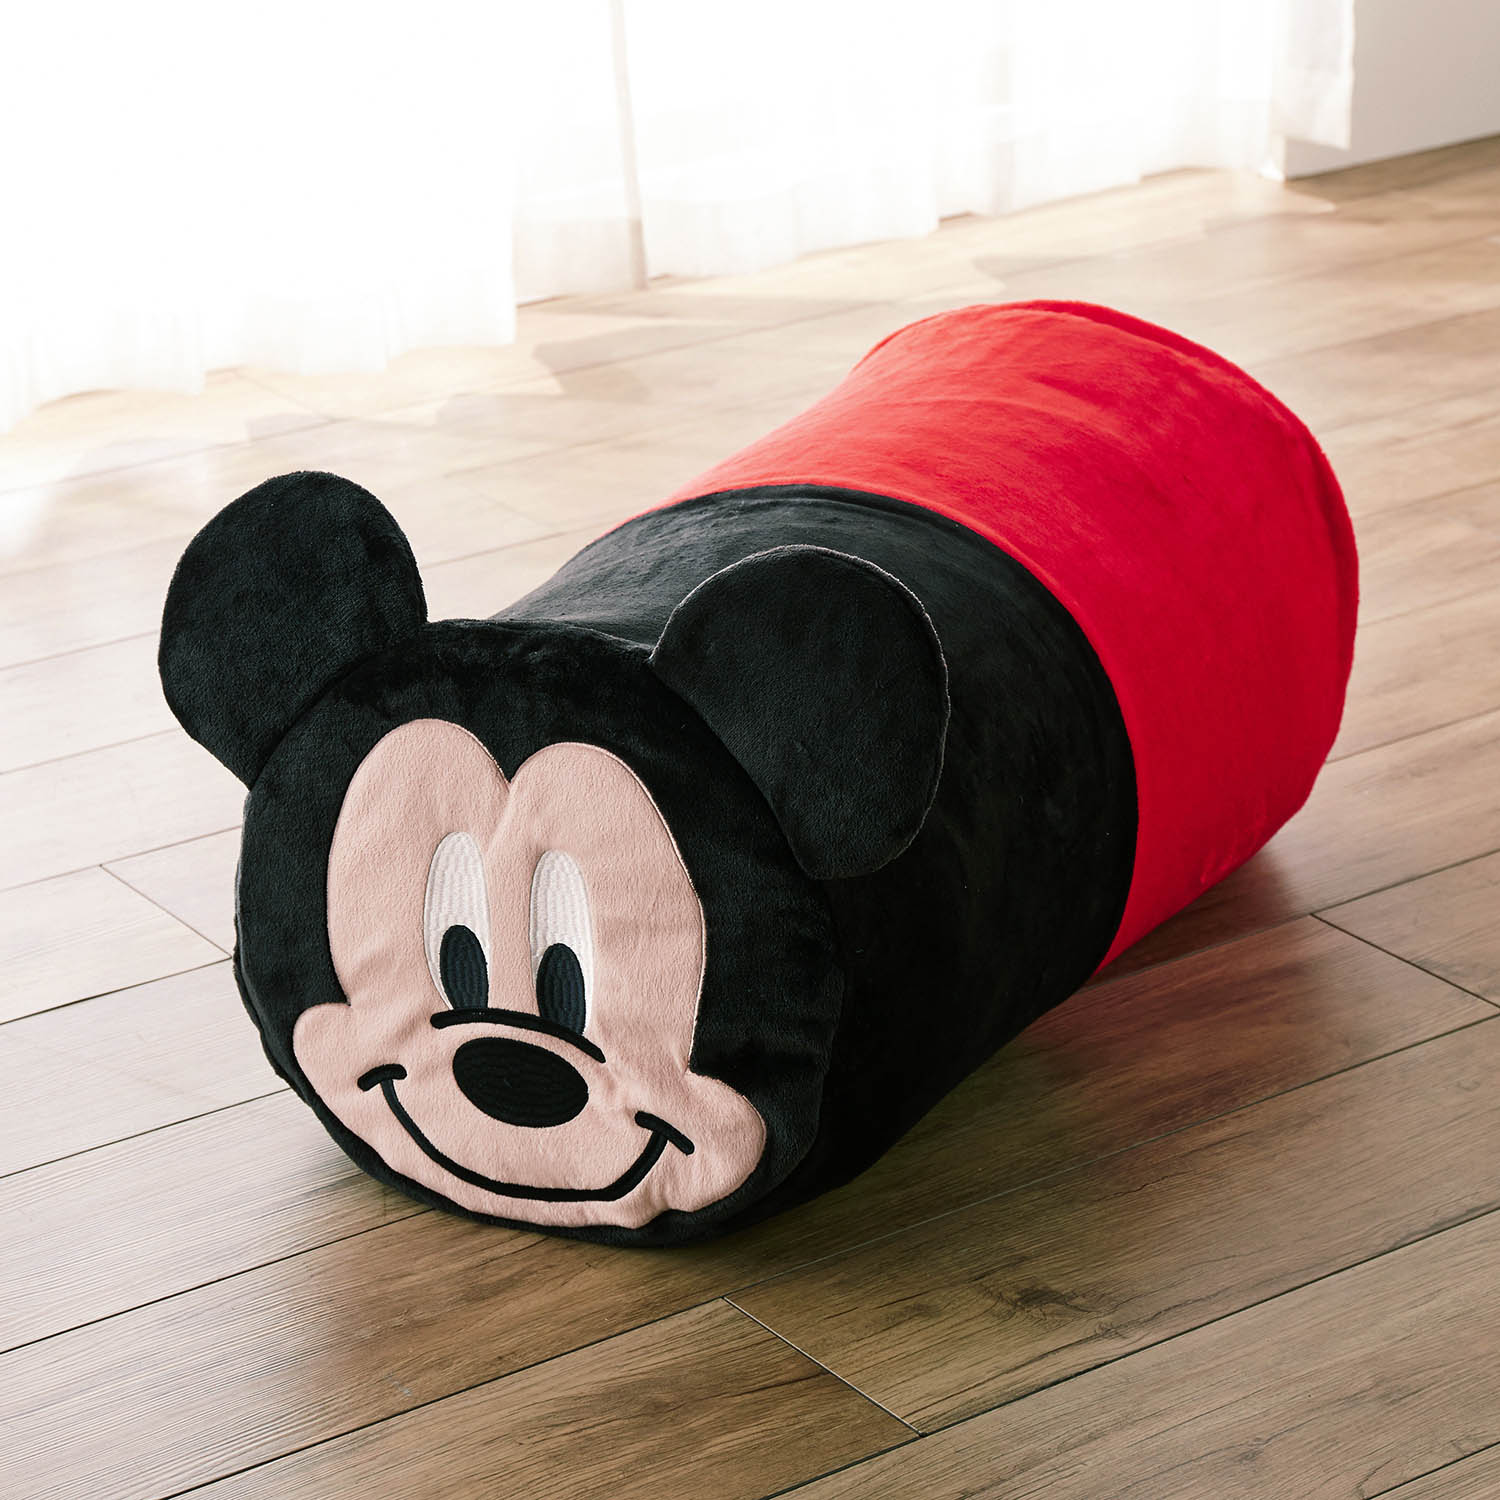 ベルメゾン ディズニー 抱き枕になる布団収納袋 選べるキャラクター ミッキーマウス ミッキーマウス ベルメゾン Jre Mall店 Jre Pointが 貯まる 使える Jre Mall